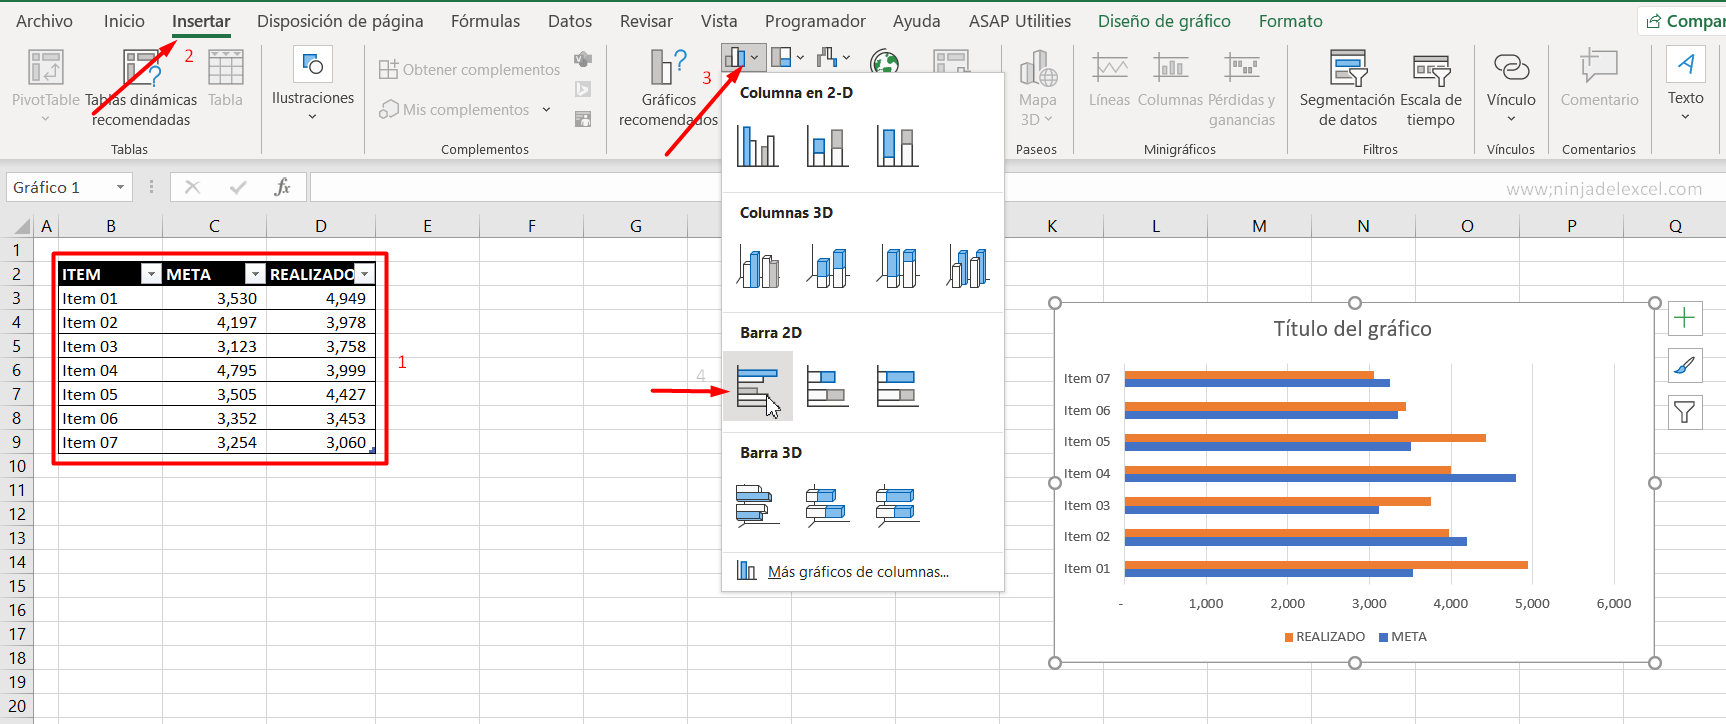 Gráfico Meta vs Realizado en Excel tutorial